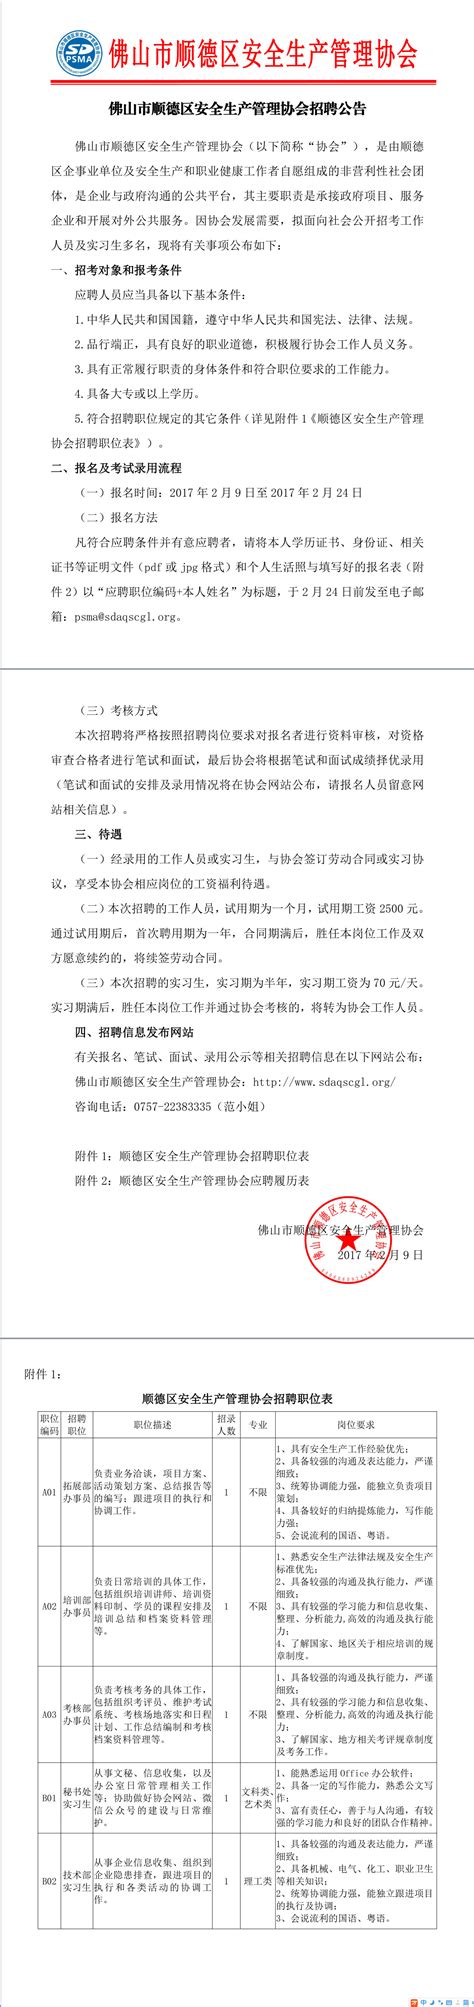 广东省佛山市顺德区沙滘初级中学2022年9月教师招聘的公告-佛山教师招聘网.